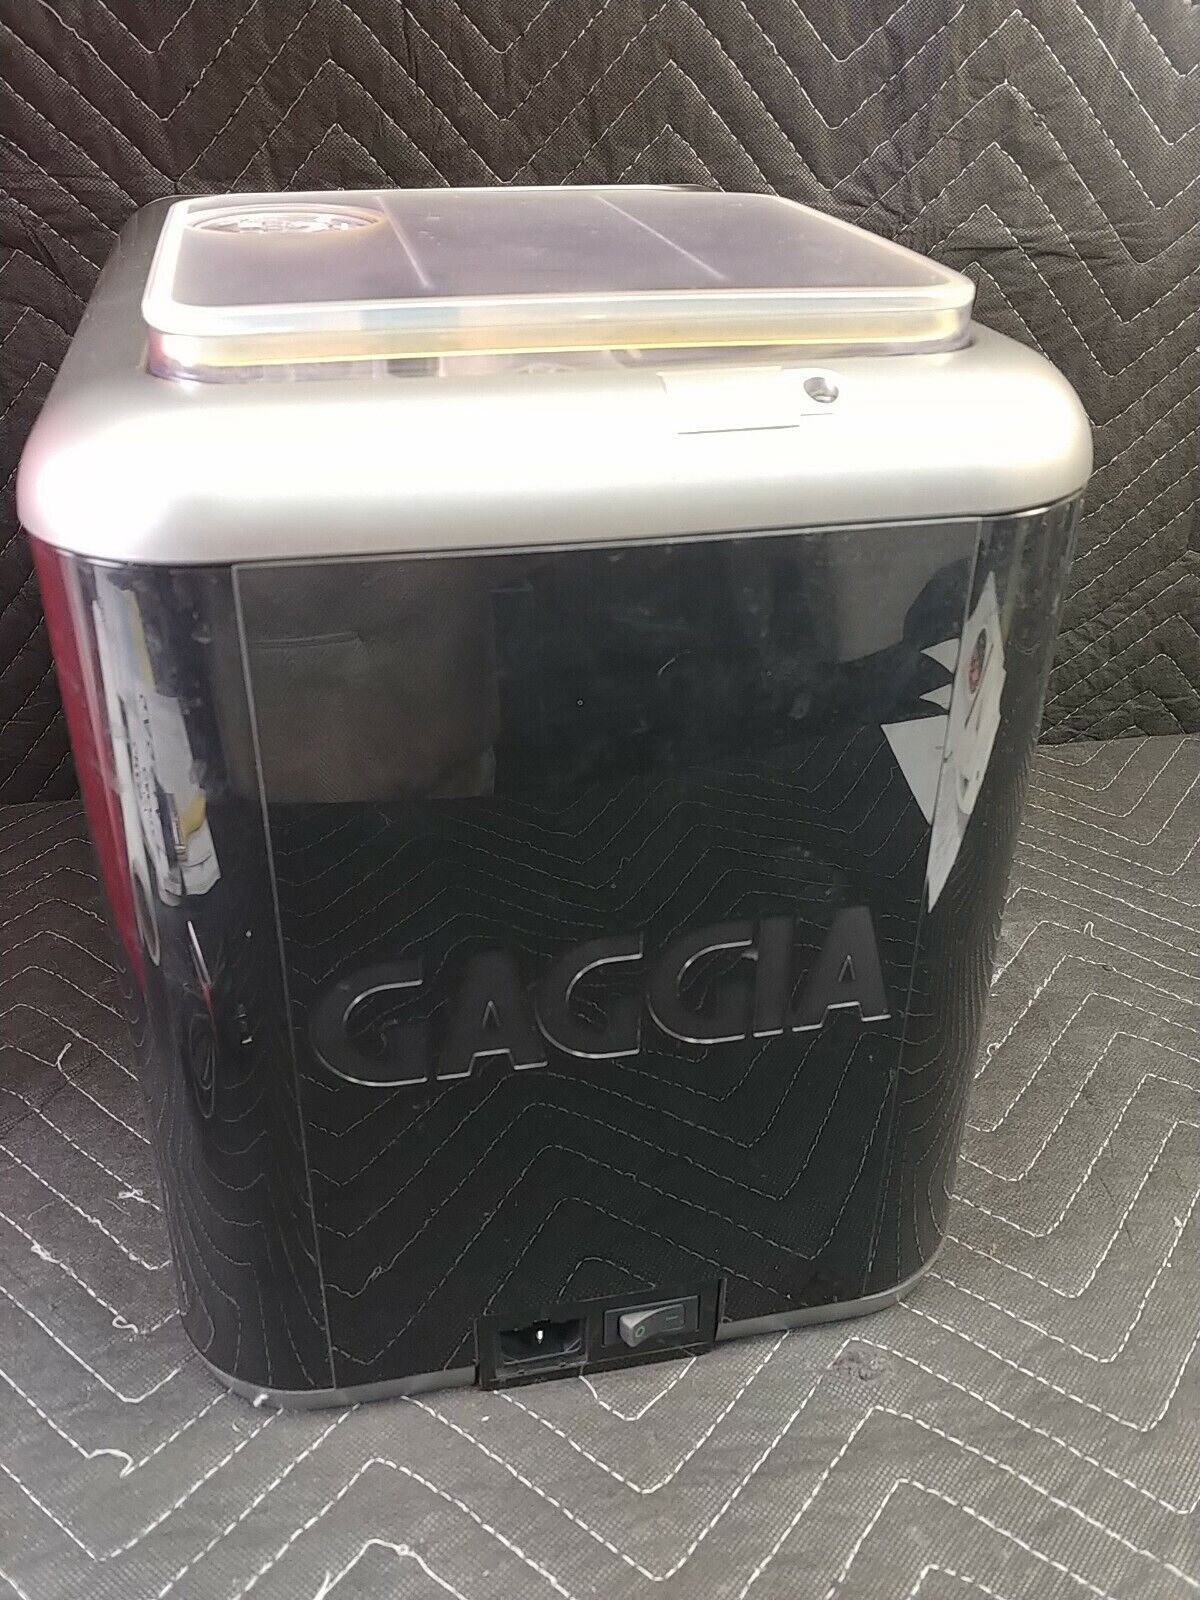 Gaggia Brera Espresso Machine - Black/Silver w/ Box, Paper and Accessories